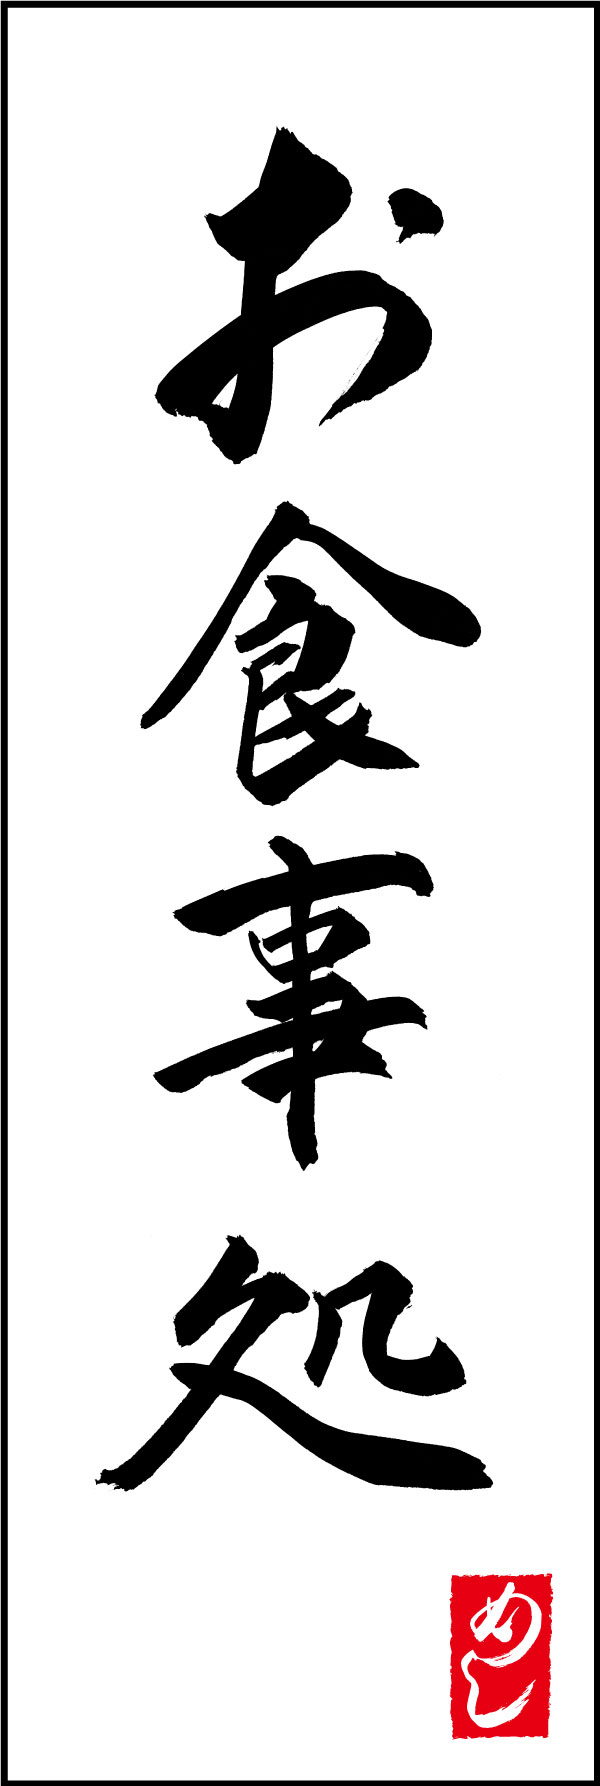 お食事処 167_01「お食事処」ののぼりです。江戸文字職人 加藤木大介氏による、手書きの筆文字です。完全書き下ろし、唯一無二ののぼりは当店だけのオリジナル商品です。（Y.M） 